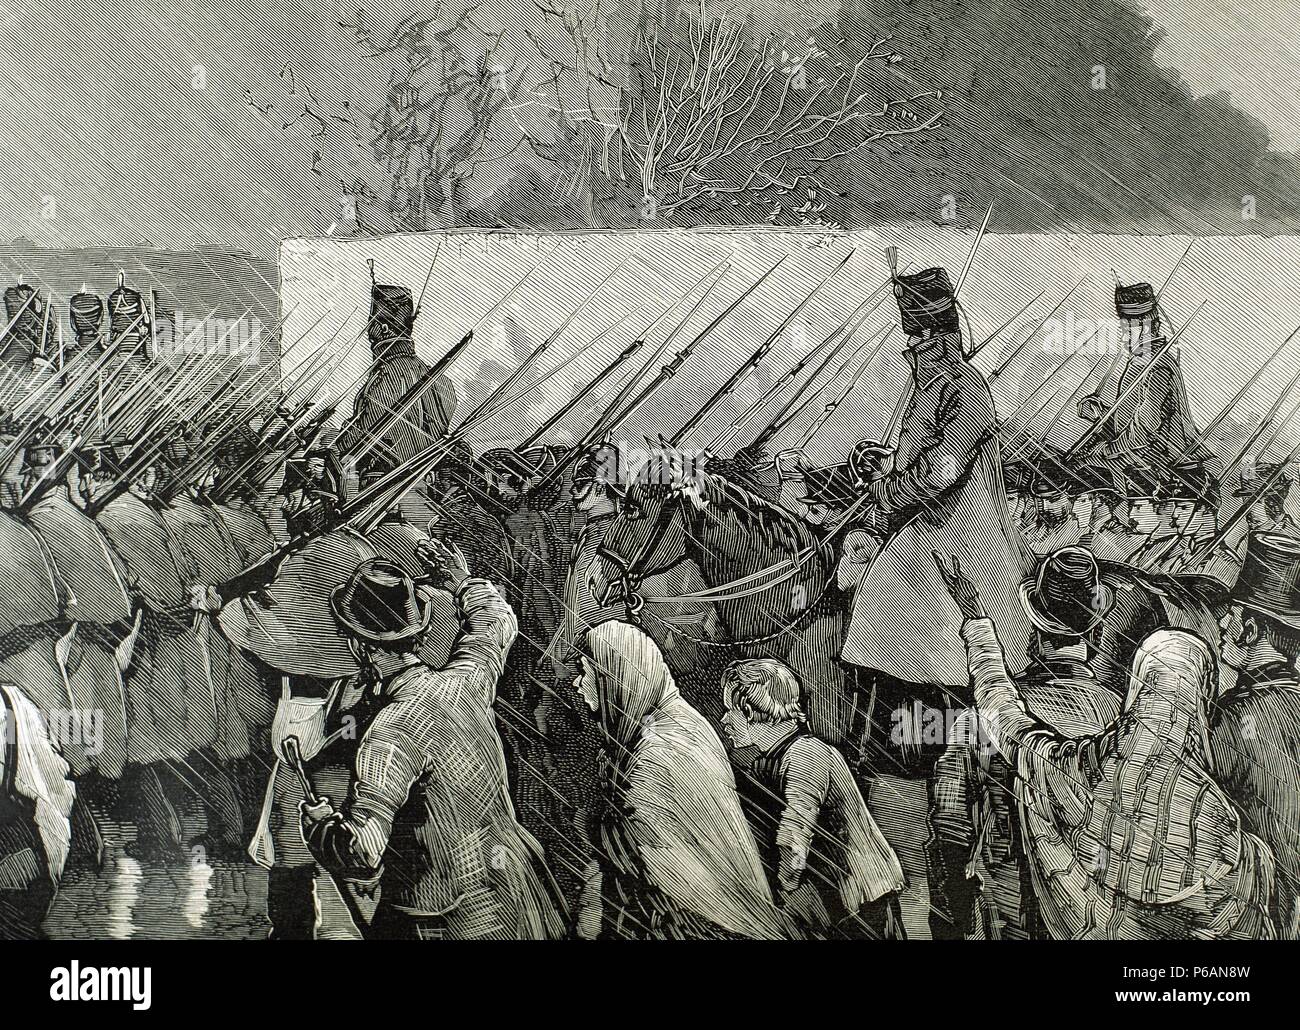 Irland. Agrarische agitation. Ulster den Bauern von Soldaten begleitet zu gehen, um auf der Farm von Captain Charles Boykott zu Arbeiten (1832-1897). Ballinrobe, 1880. Gravur. Stockfoto